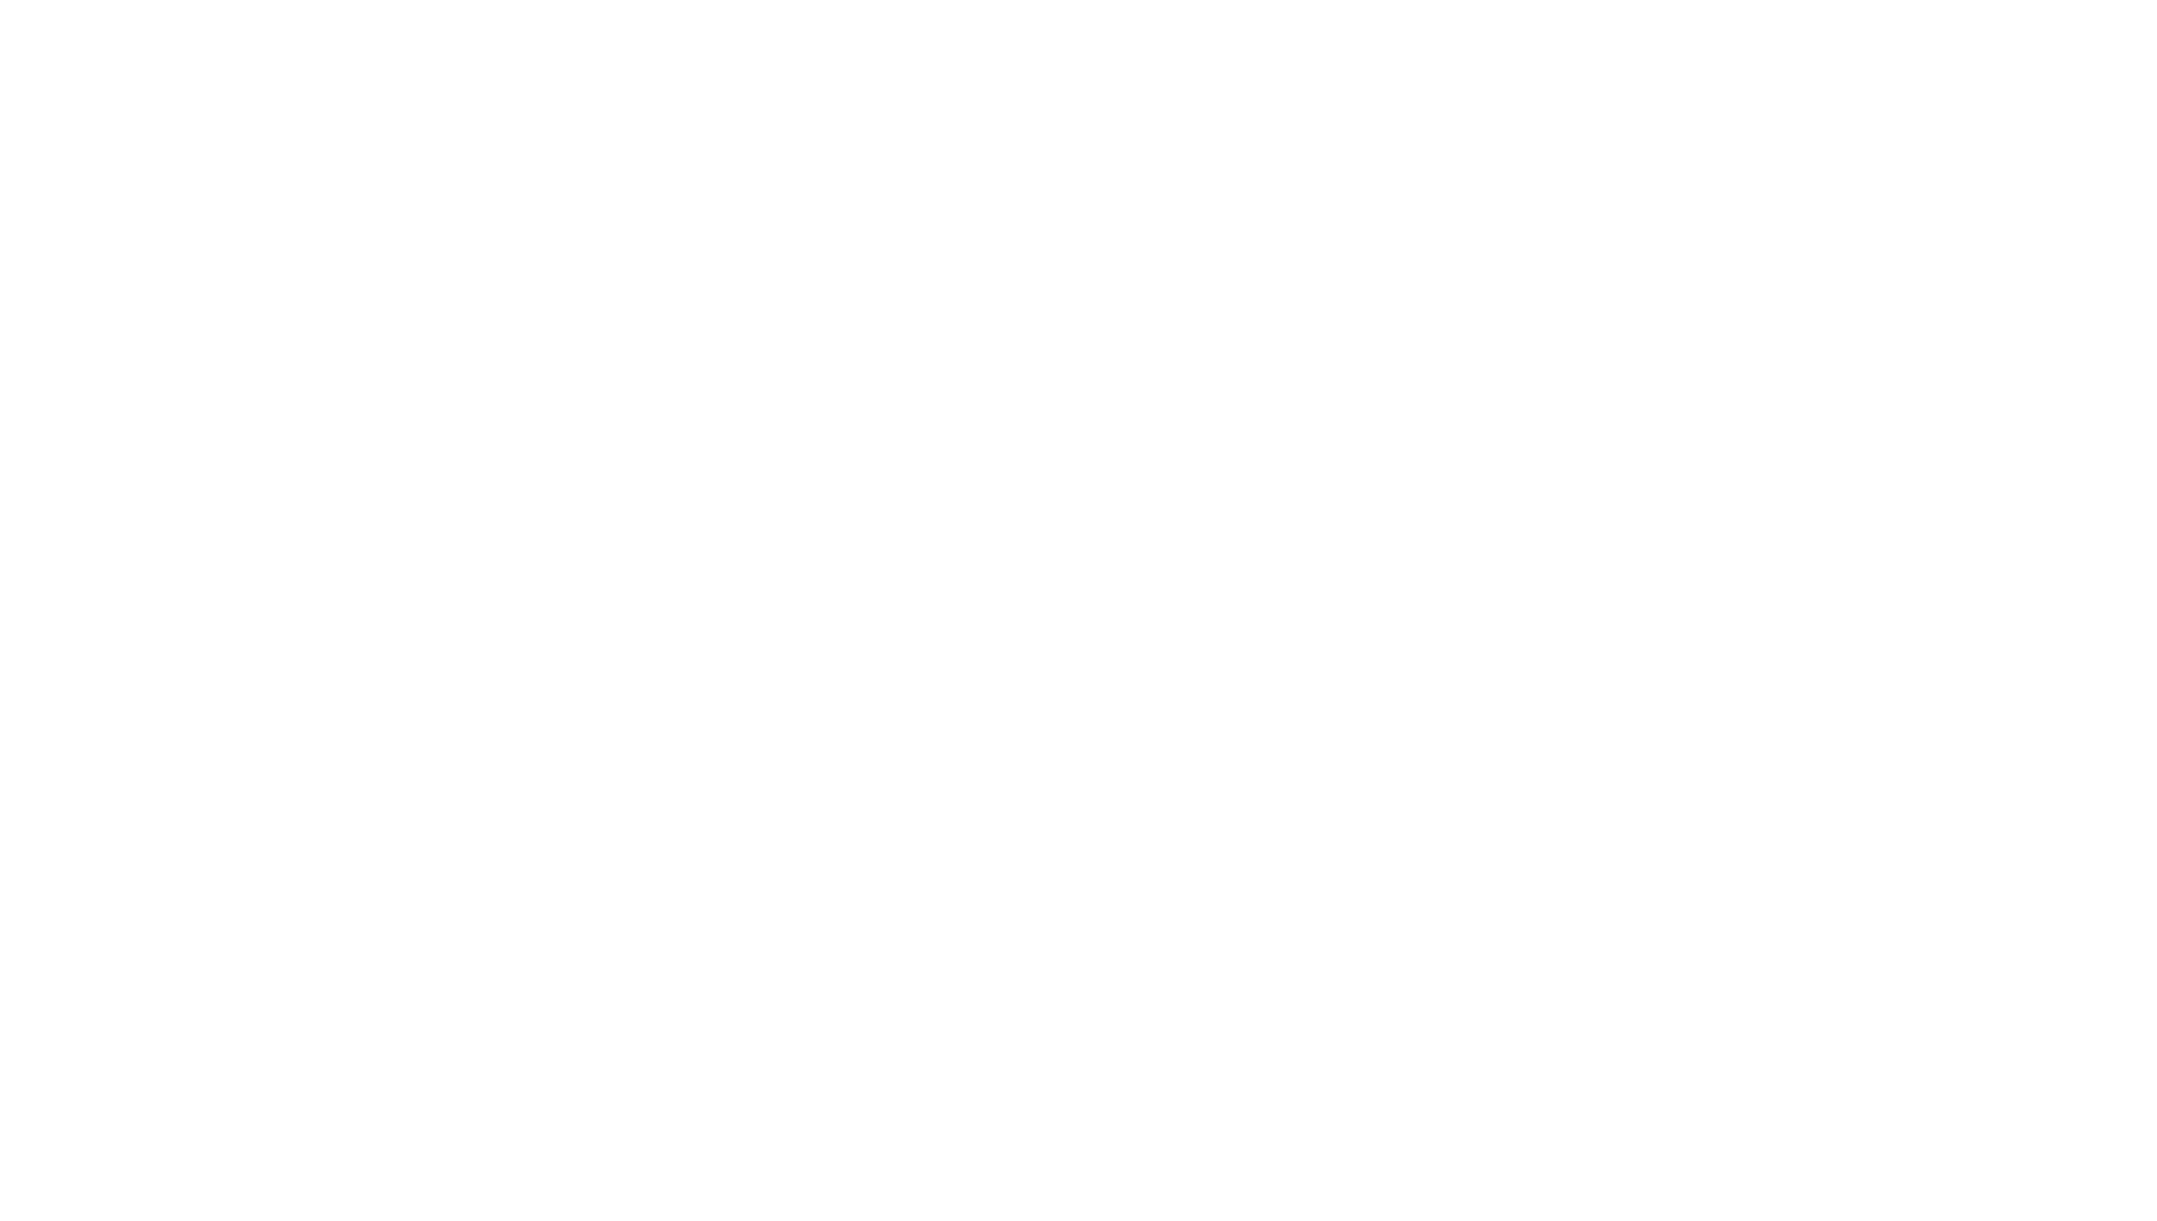 capt hirams logo white